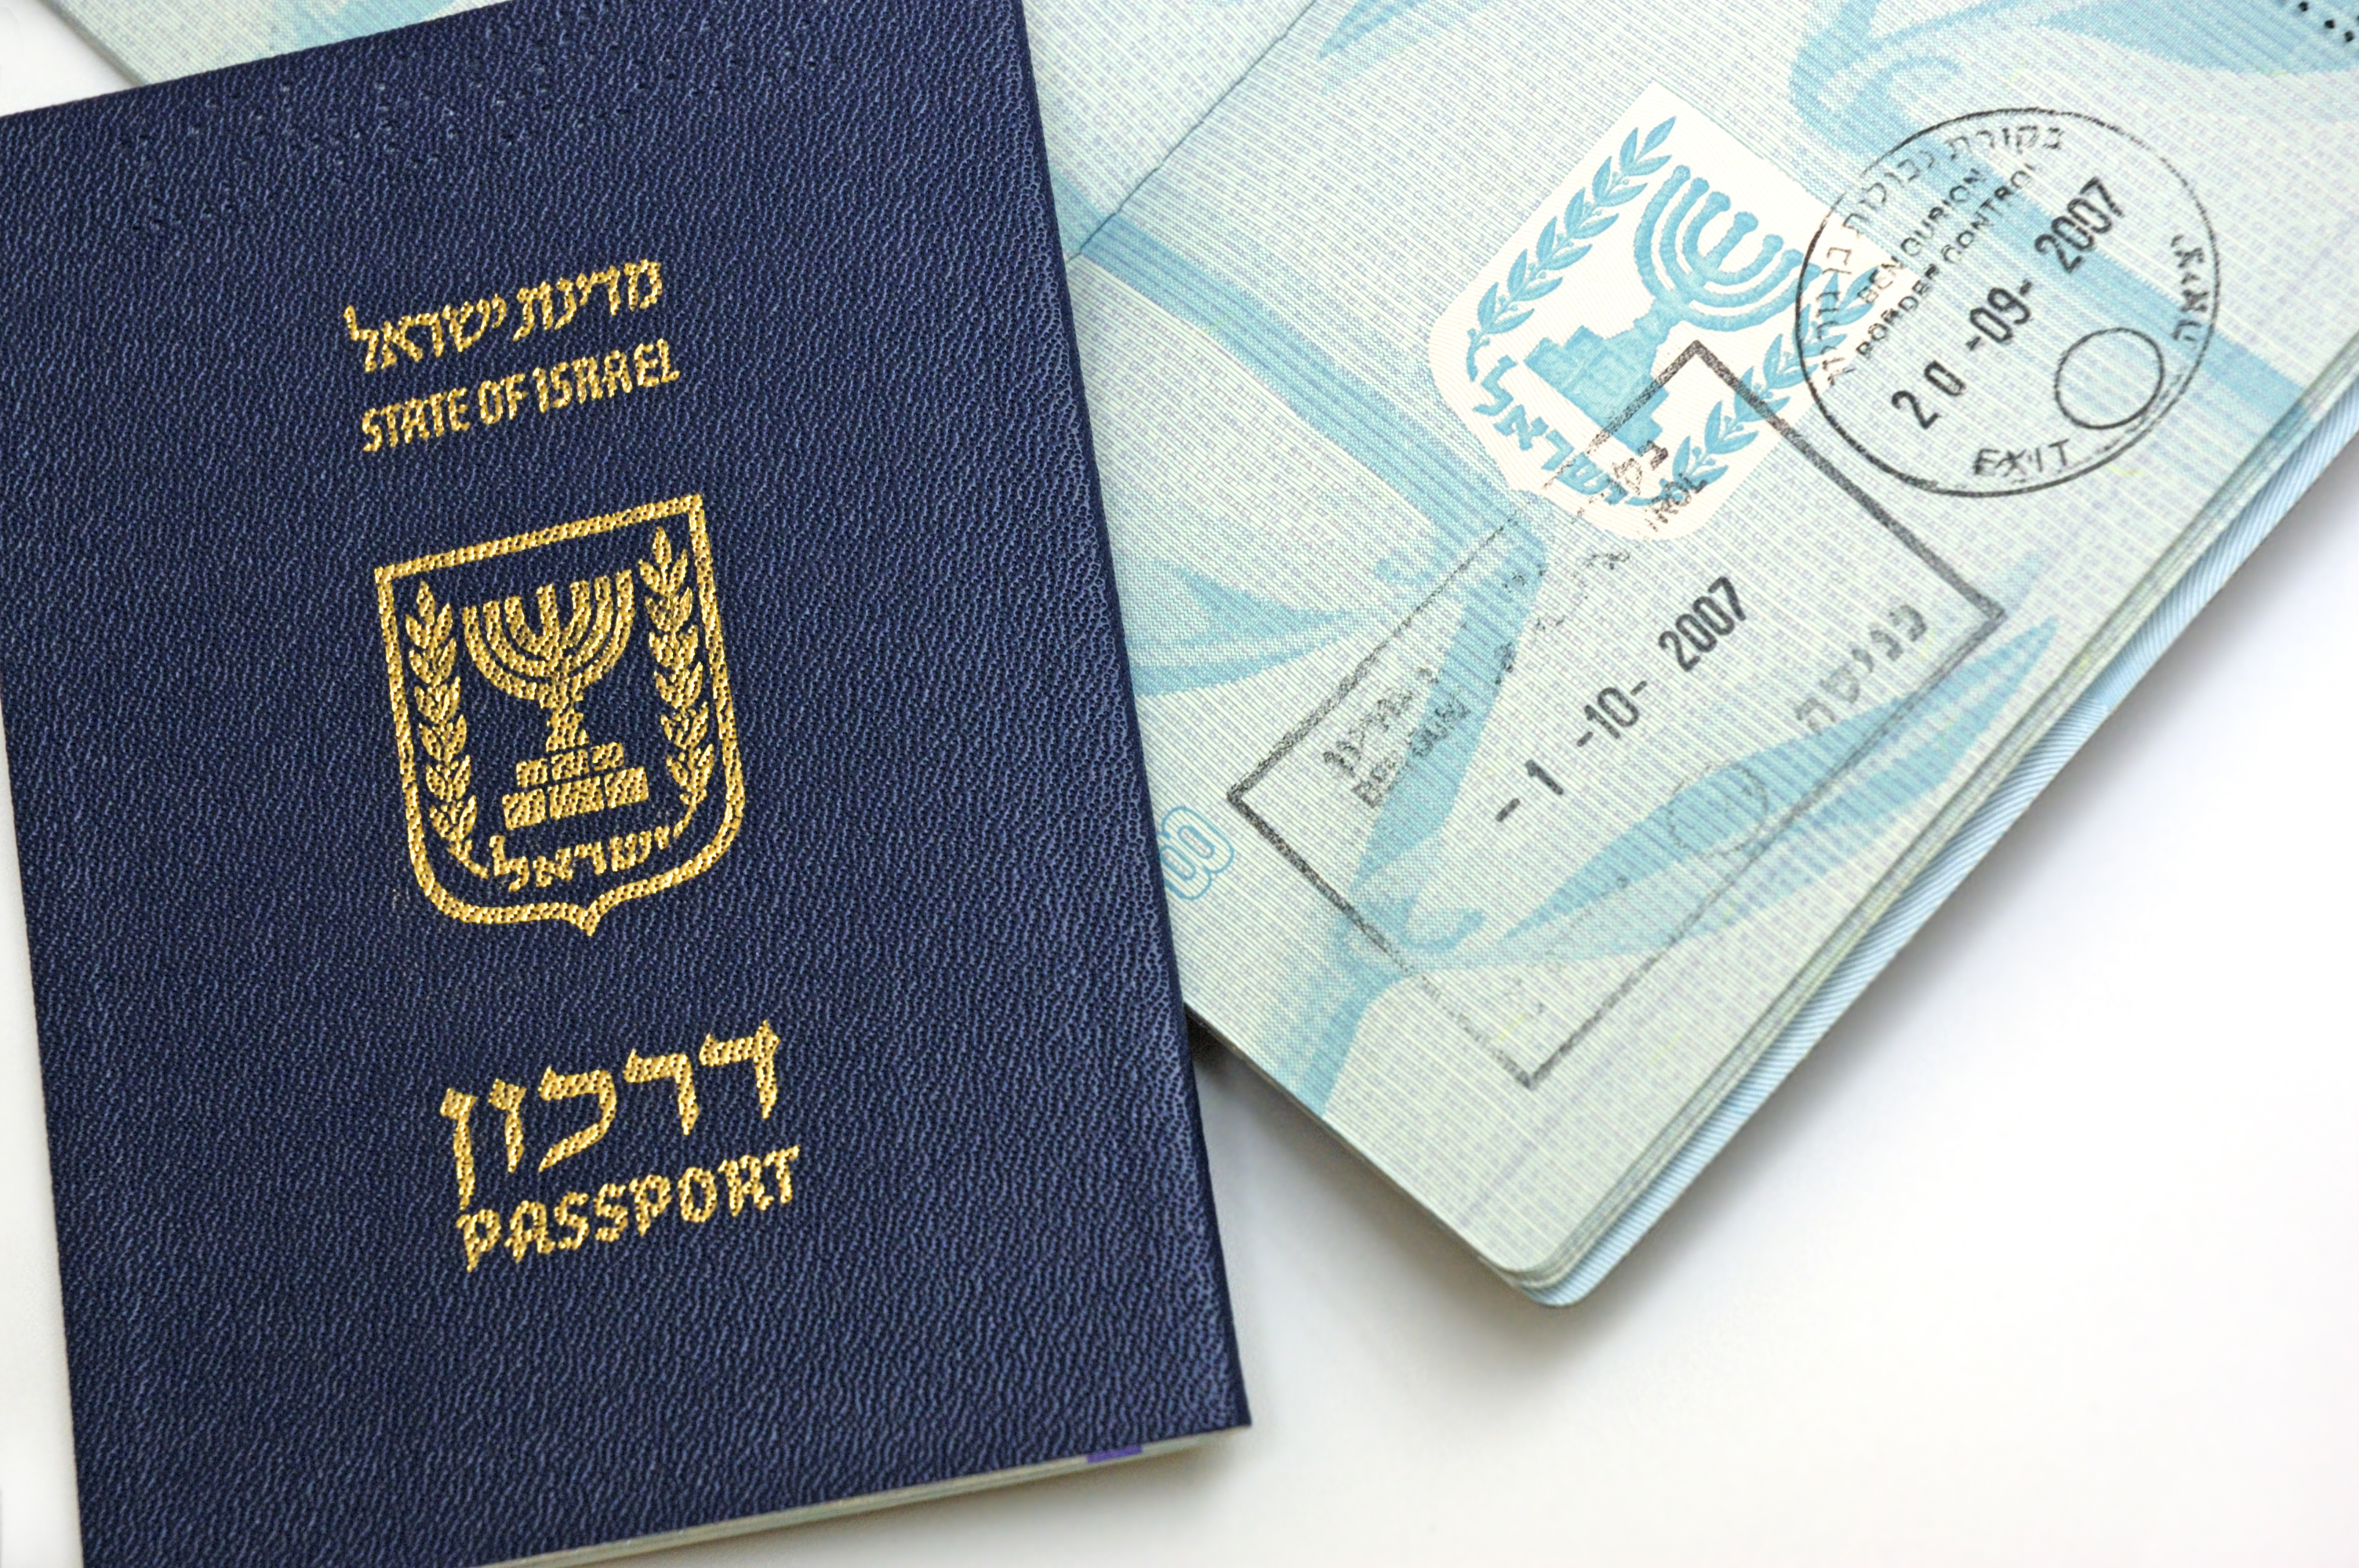 Виза в Израиль, которую иностранцам надо оформлять для работы в стране